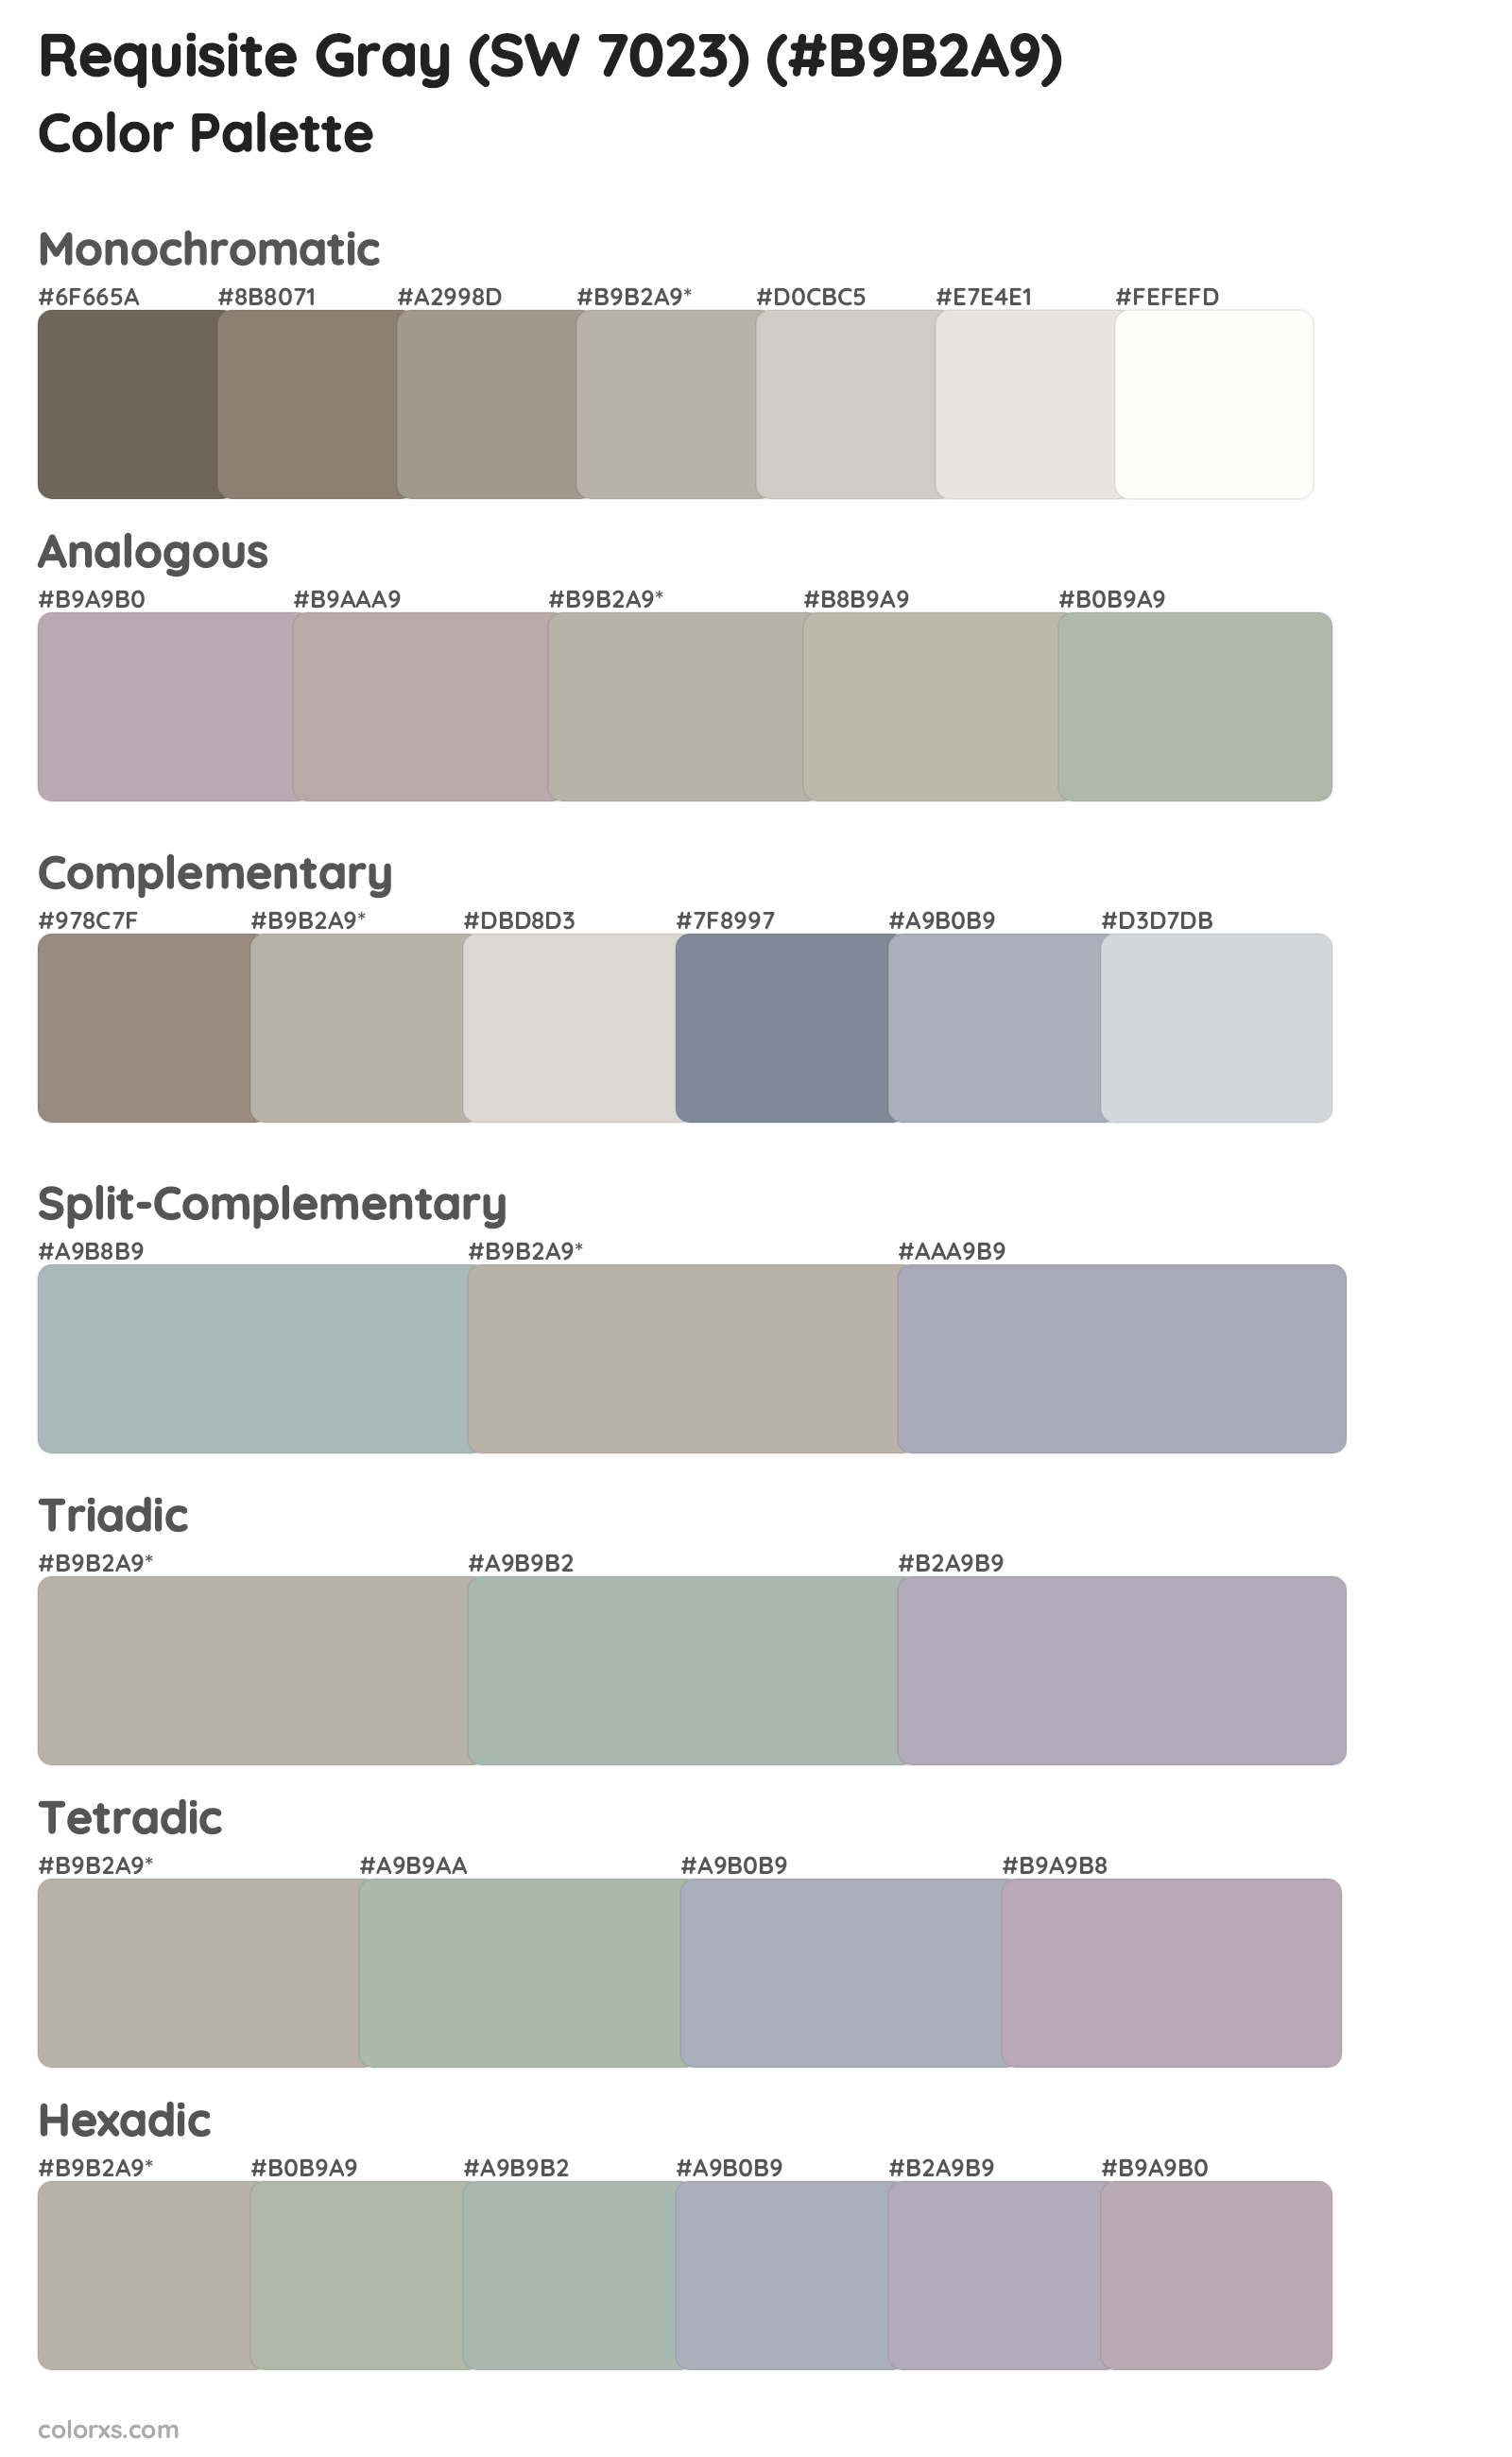 Requisite Gray (SW 7023) Color Scheme Palettes